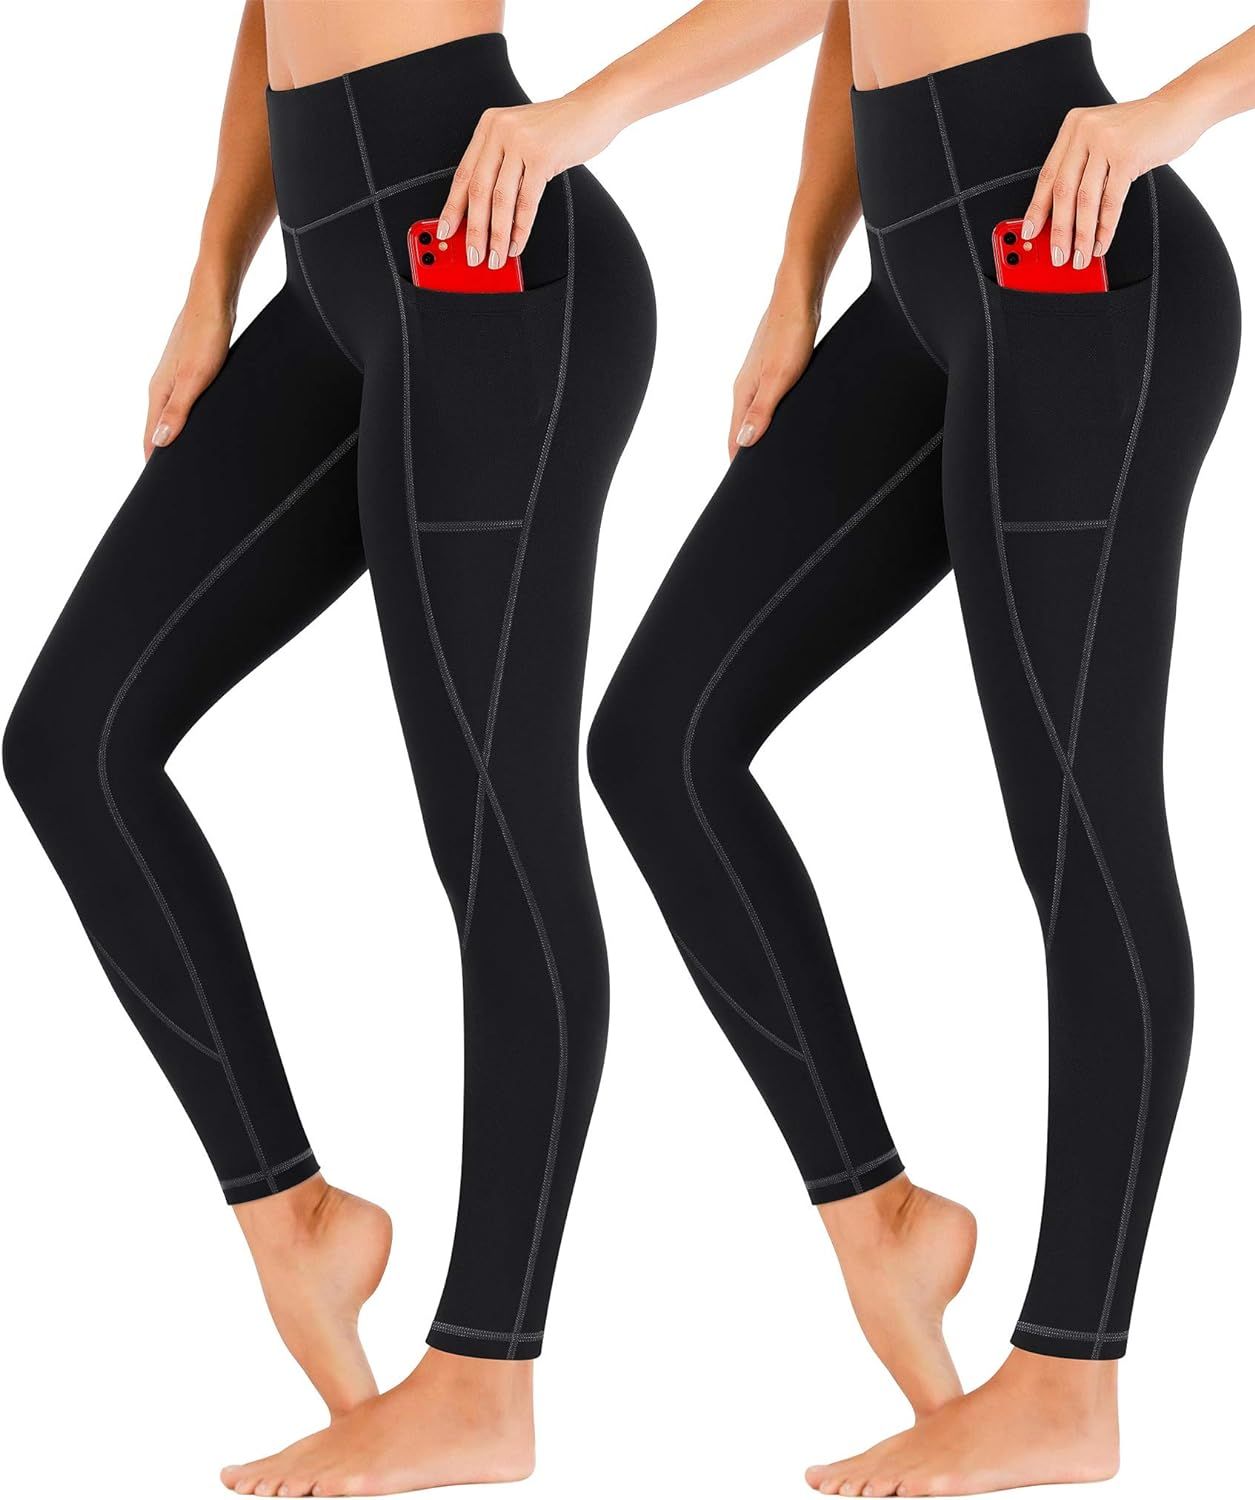 Heathyoga Yoga Pants for Women with Pockets High Waisted Leggings with Pockets for Women Workout ... | Amazon (US)